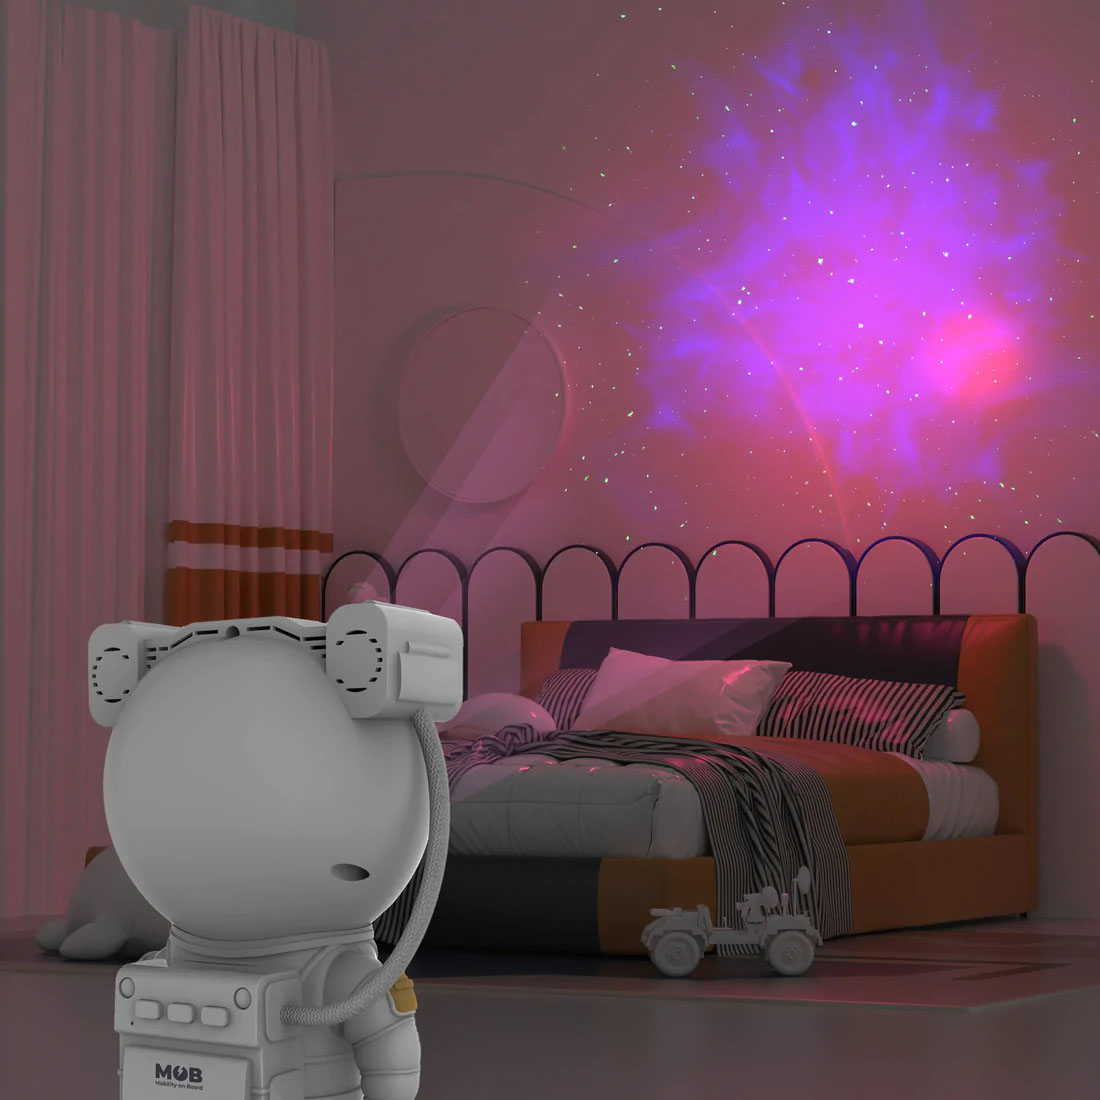 Lampe Astronaute - Projecteur Nébuleuse Galaxy Light